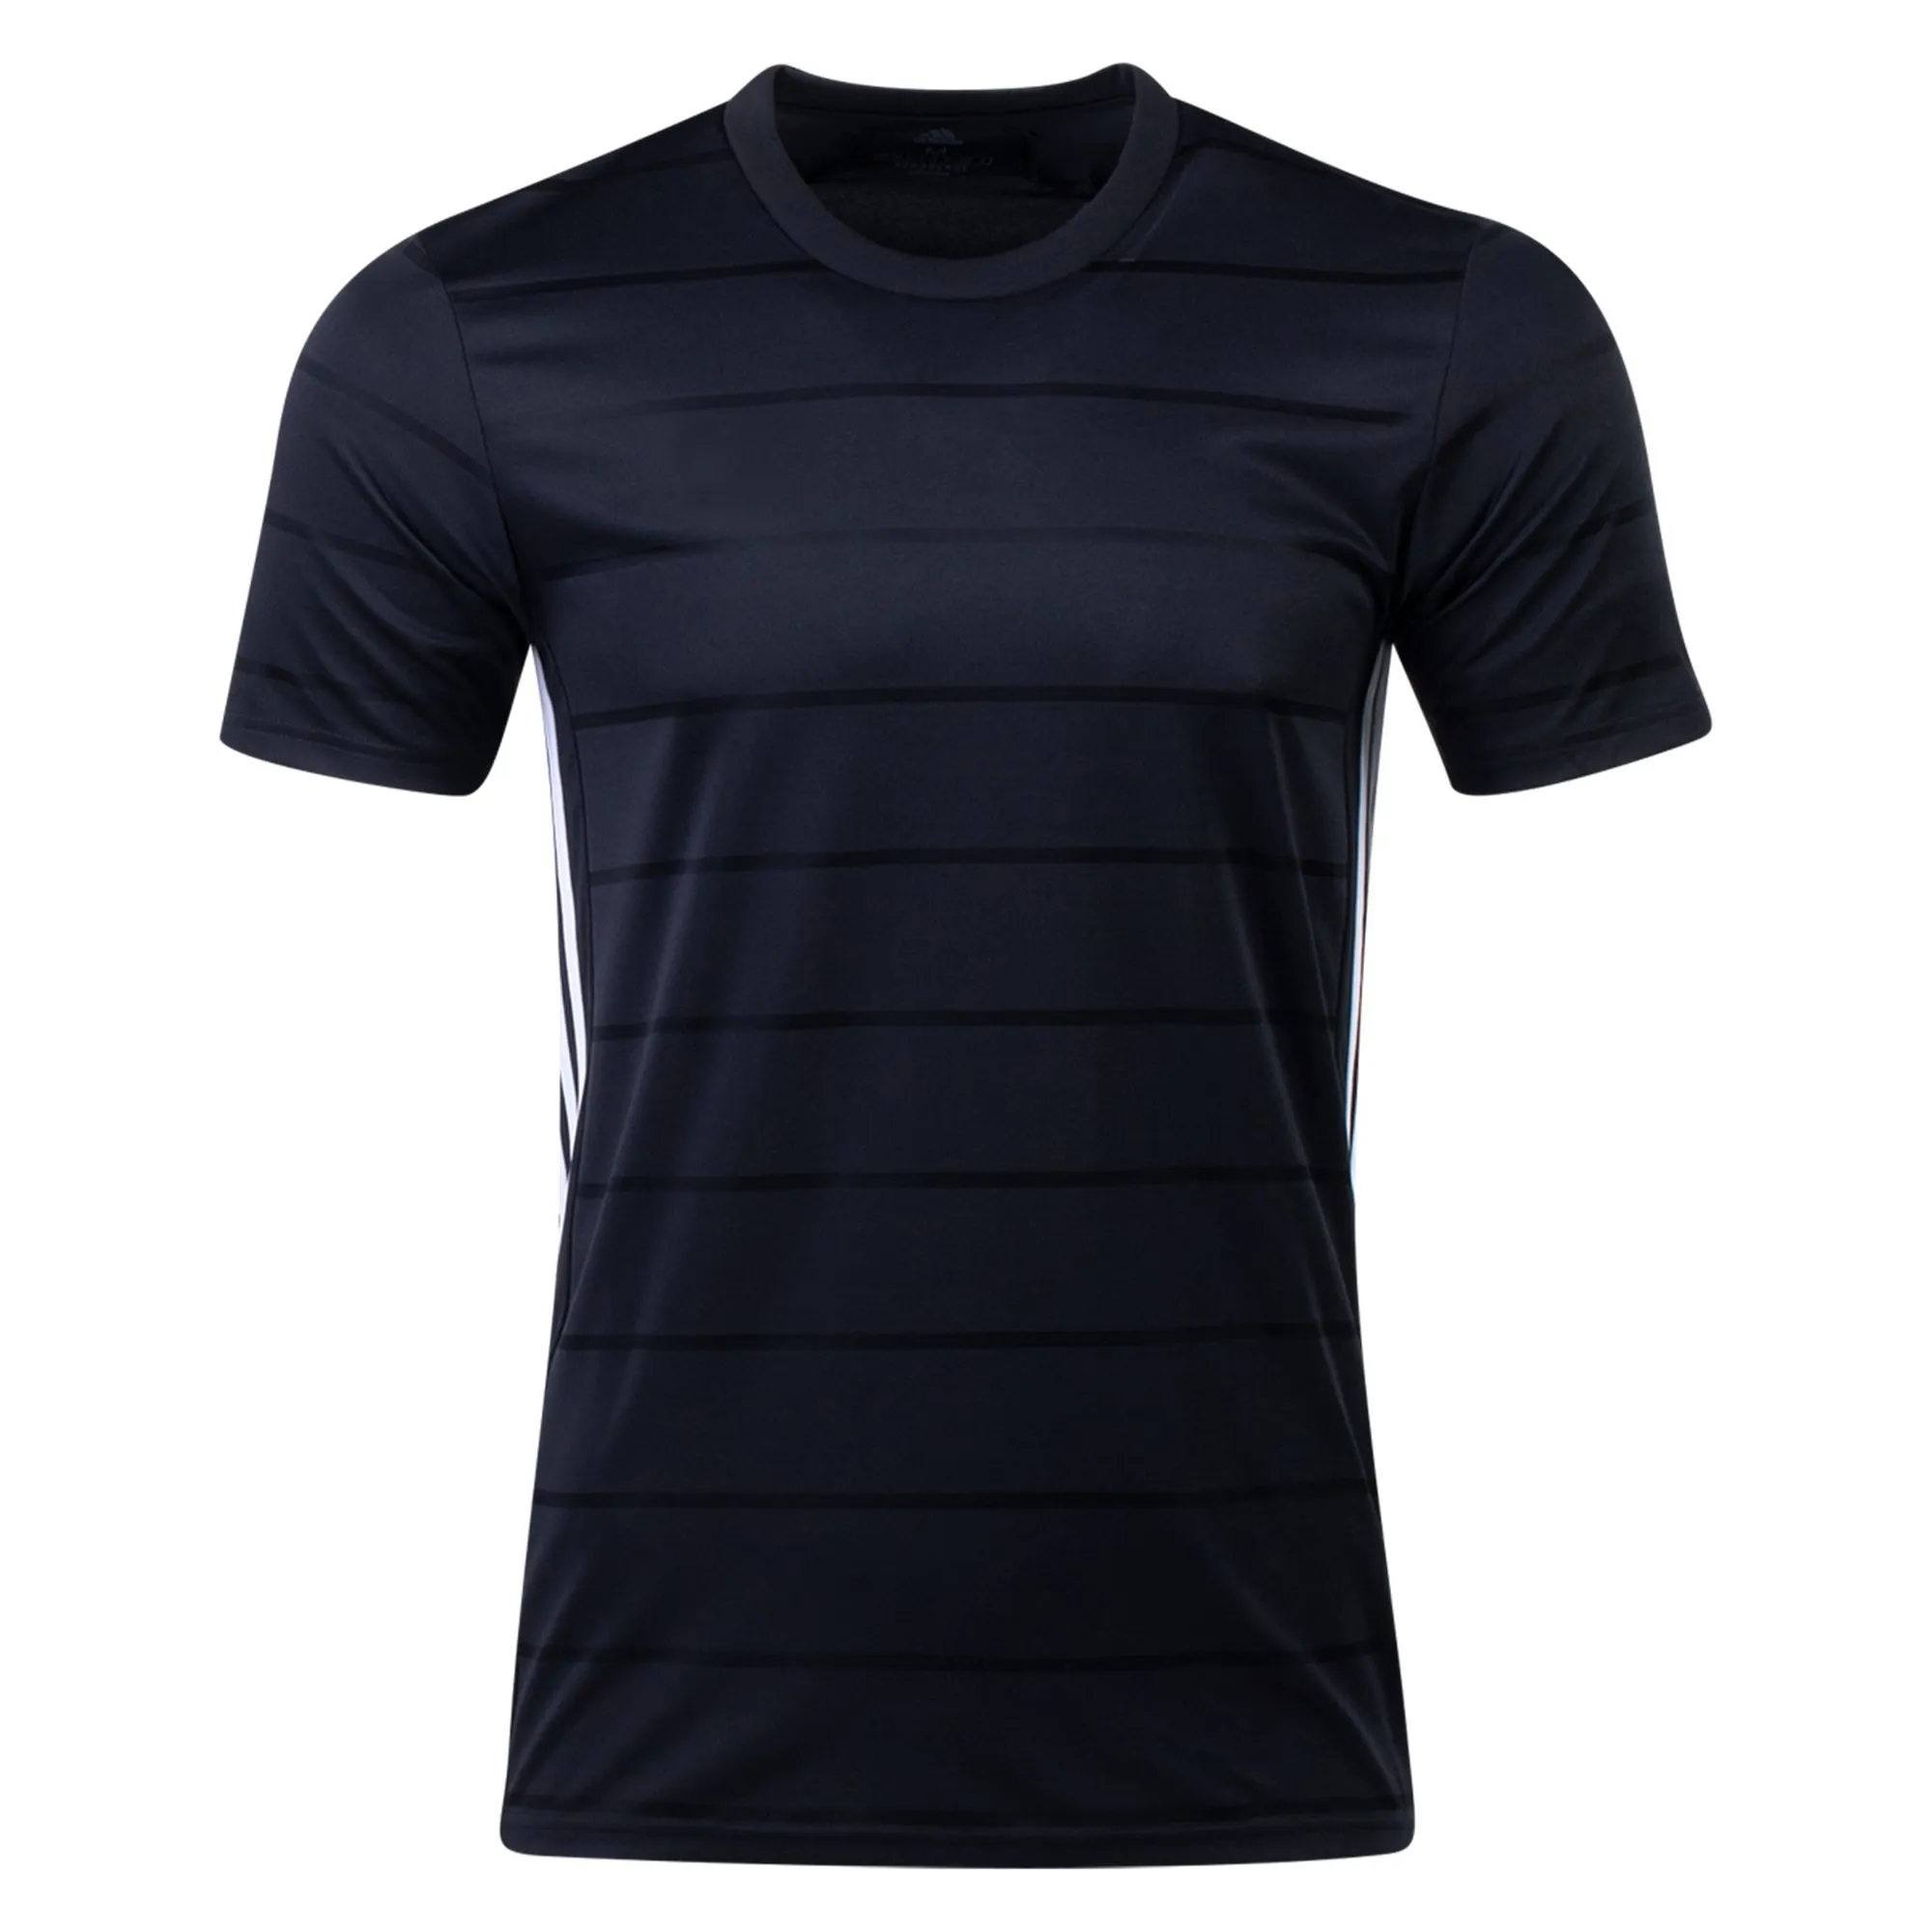 قميص كرة القدم الأزرق الداكن بتصميم جديد مخصص طباعة من القطن والبوليستر قميص لاعب كرة القدم